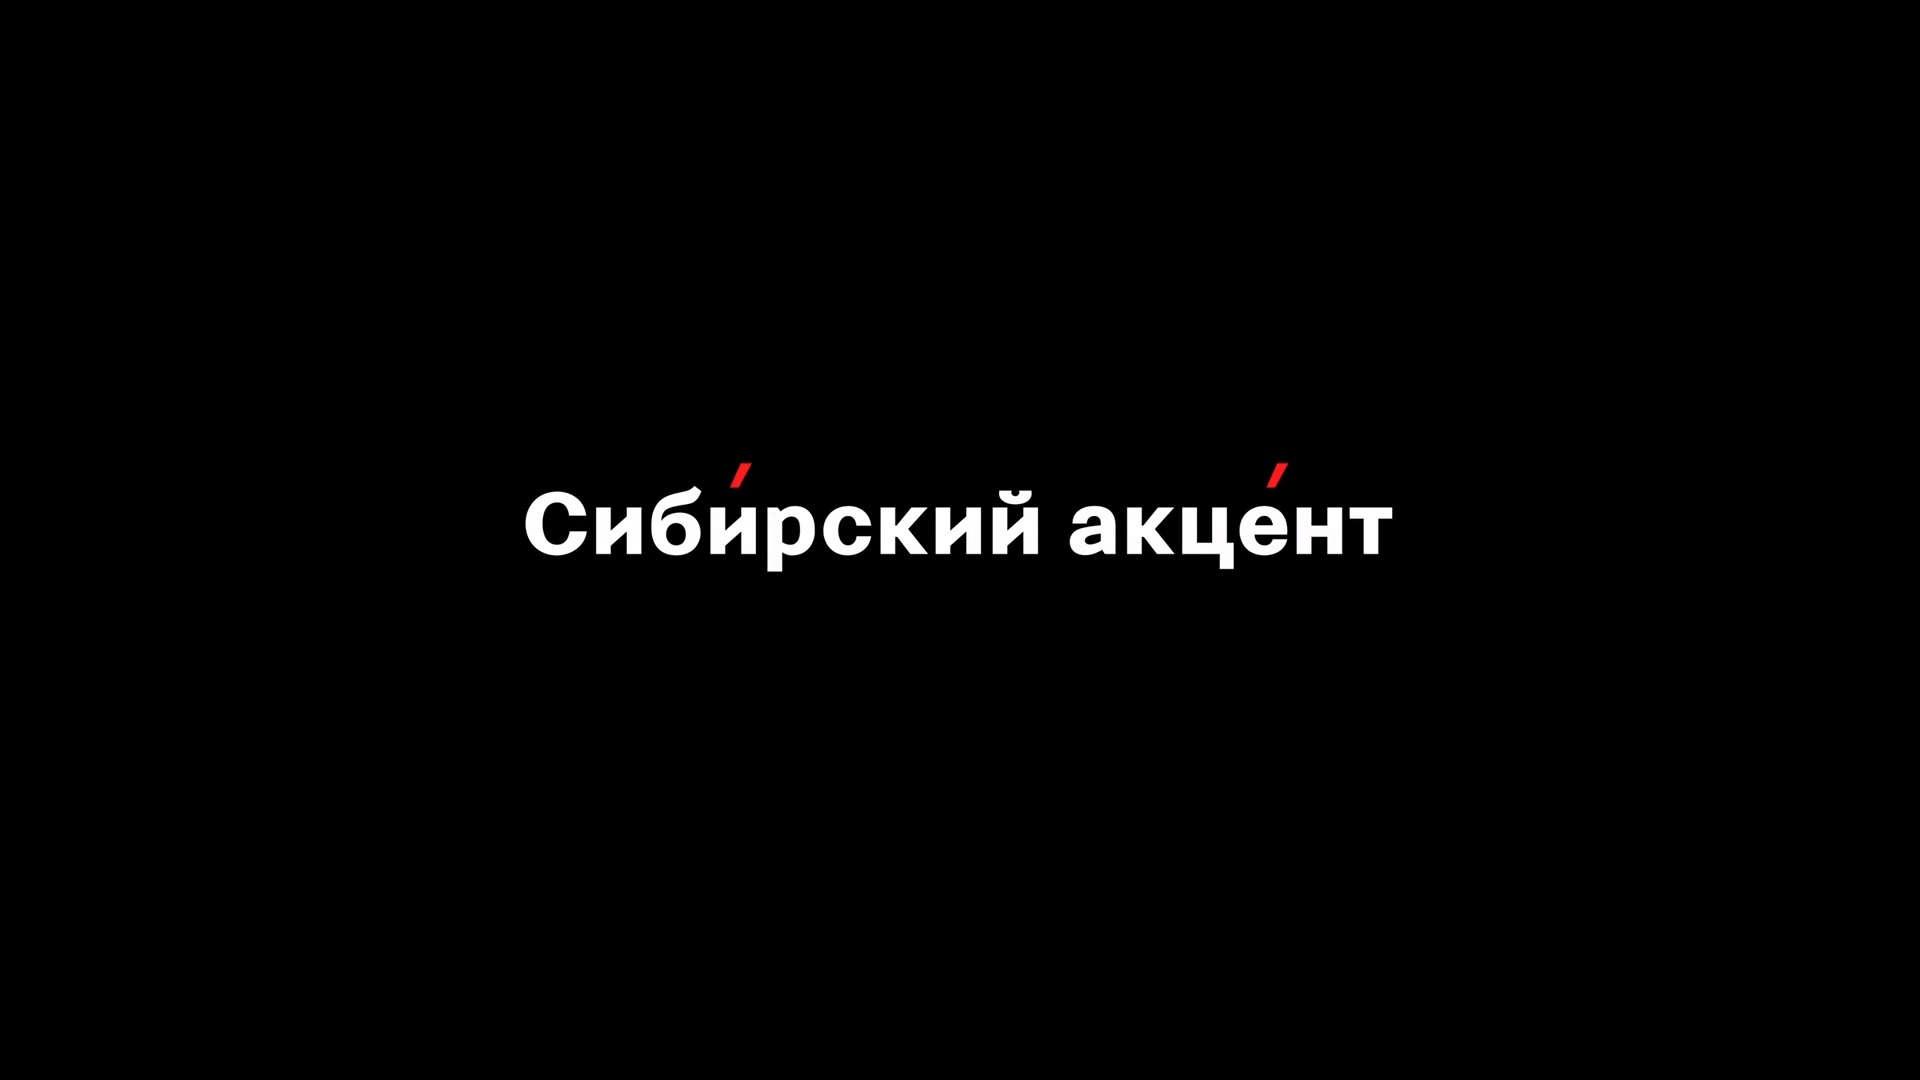 Новая серия «Сибирского акцента»: герой программы Геннадий Леонидович Рукша